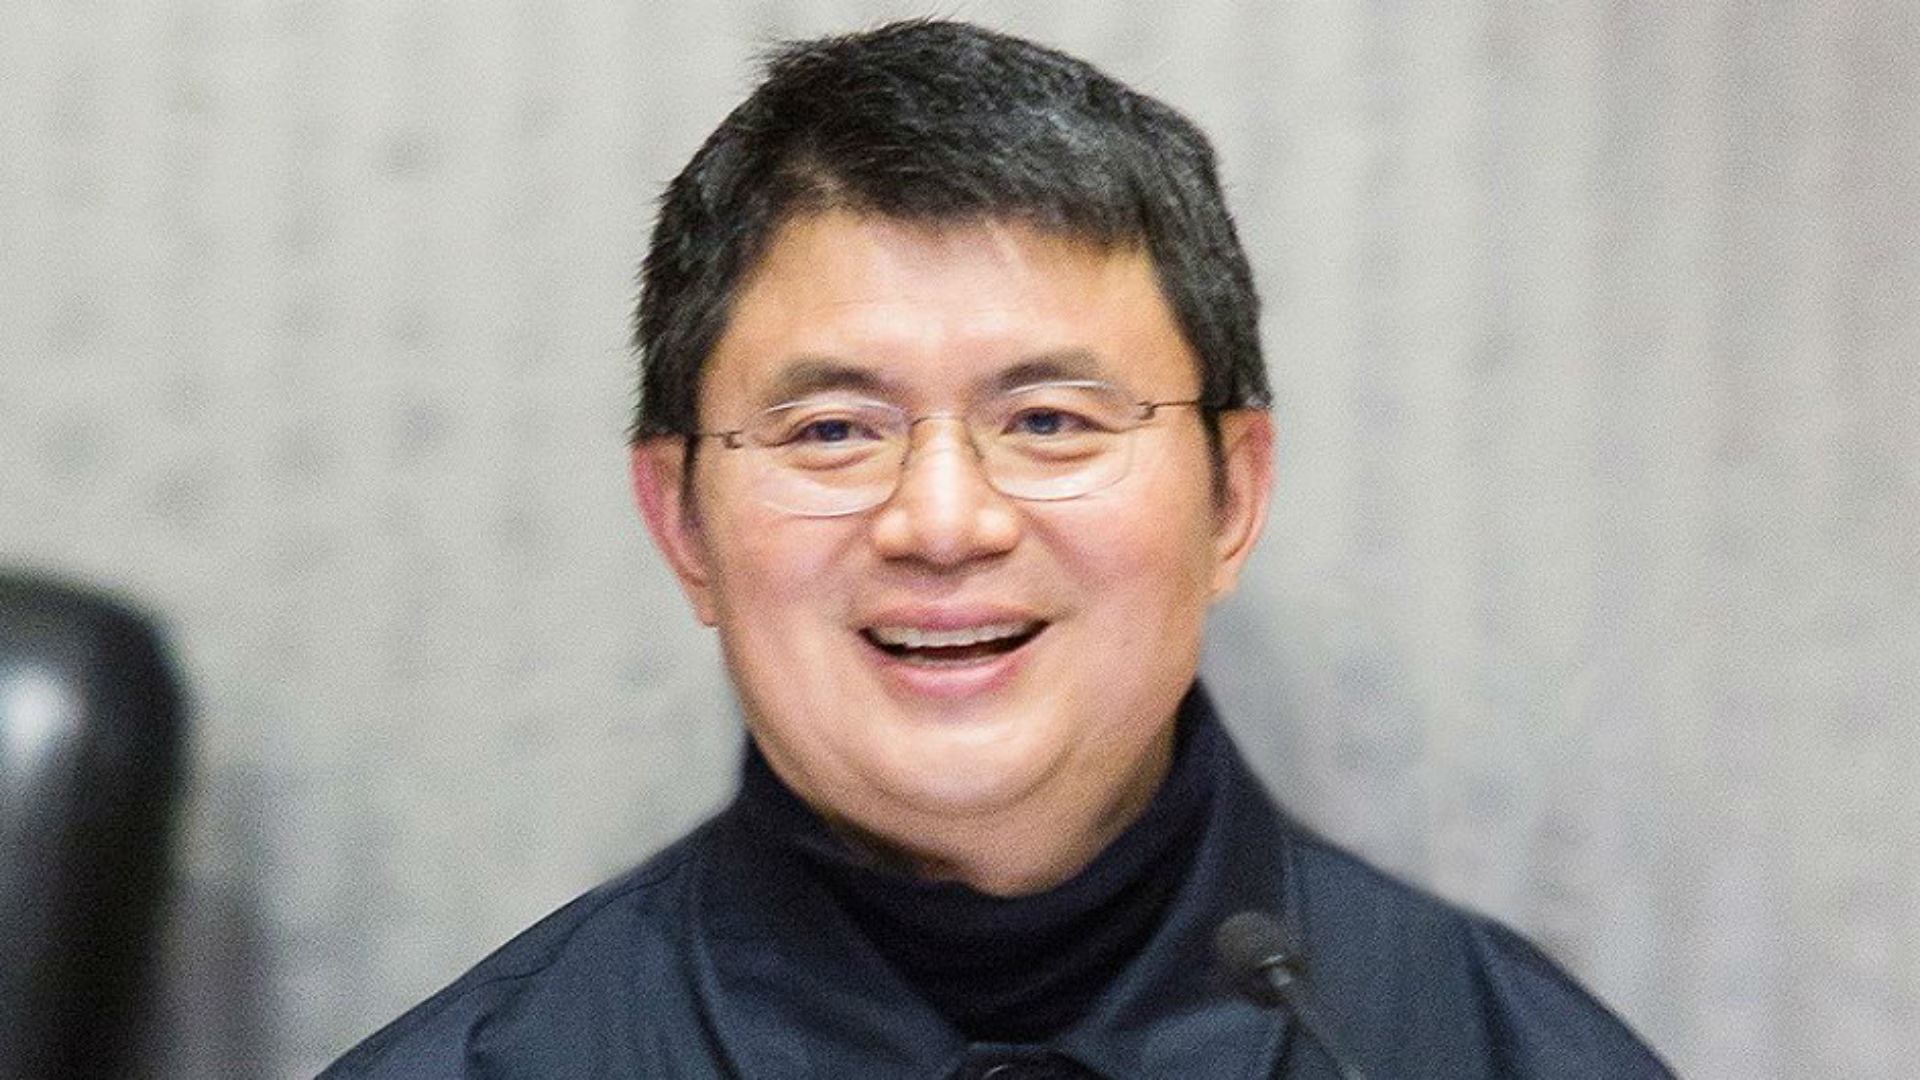 Un magnate chino-canadiense secuestrado en Hong Kong por agentes del régimen de Xi Jinping fue condenado a 13 años de prisión y una multa récord